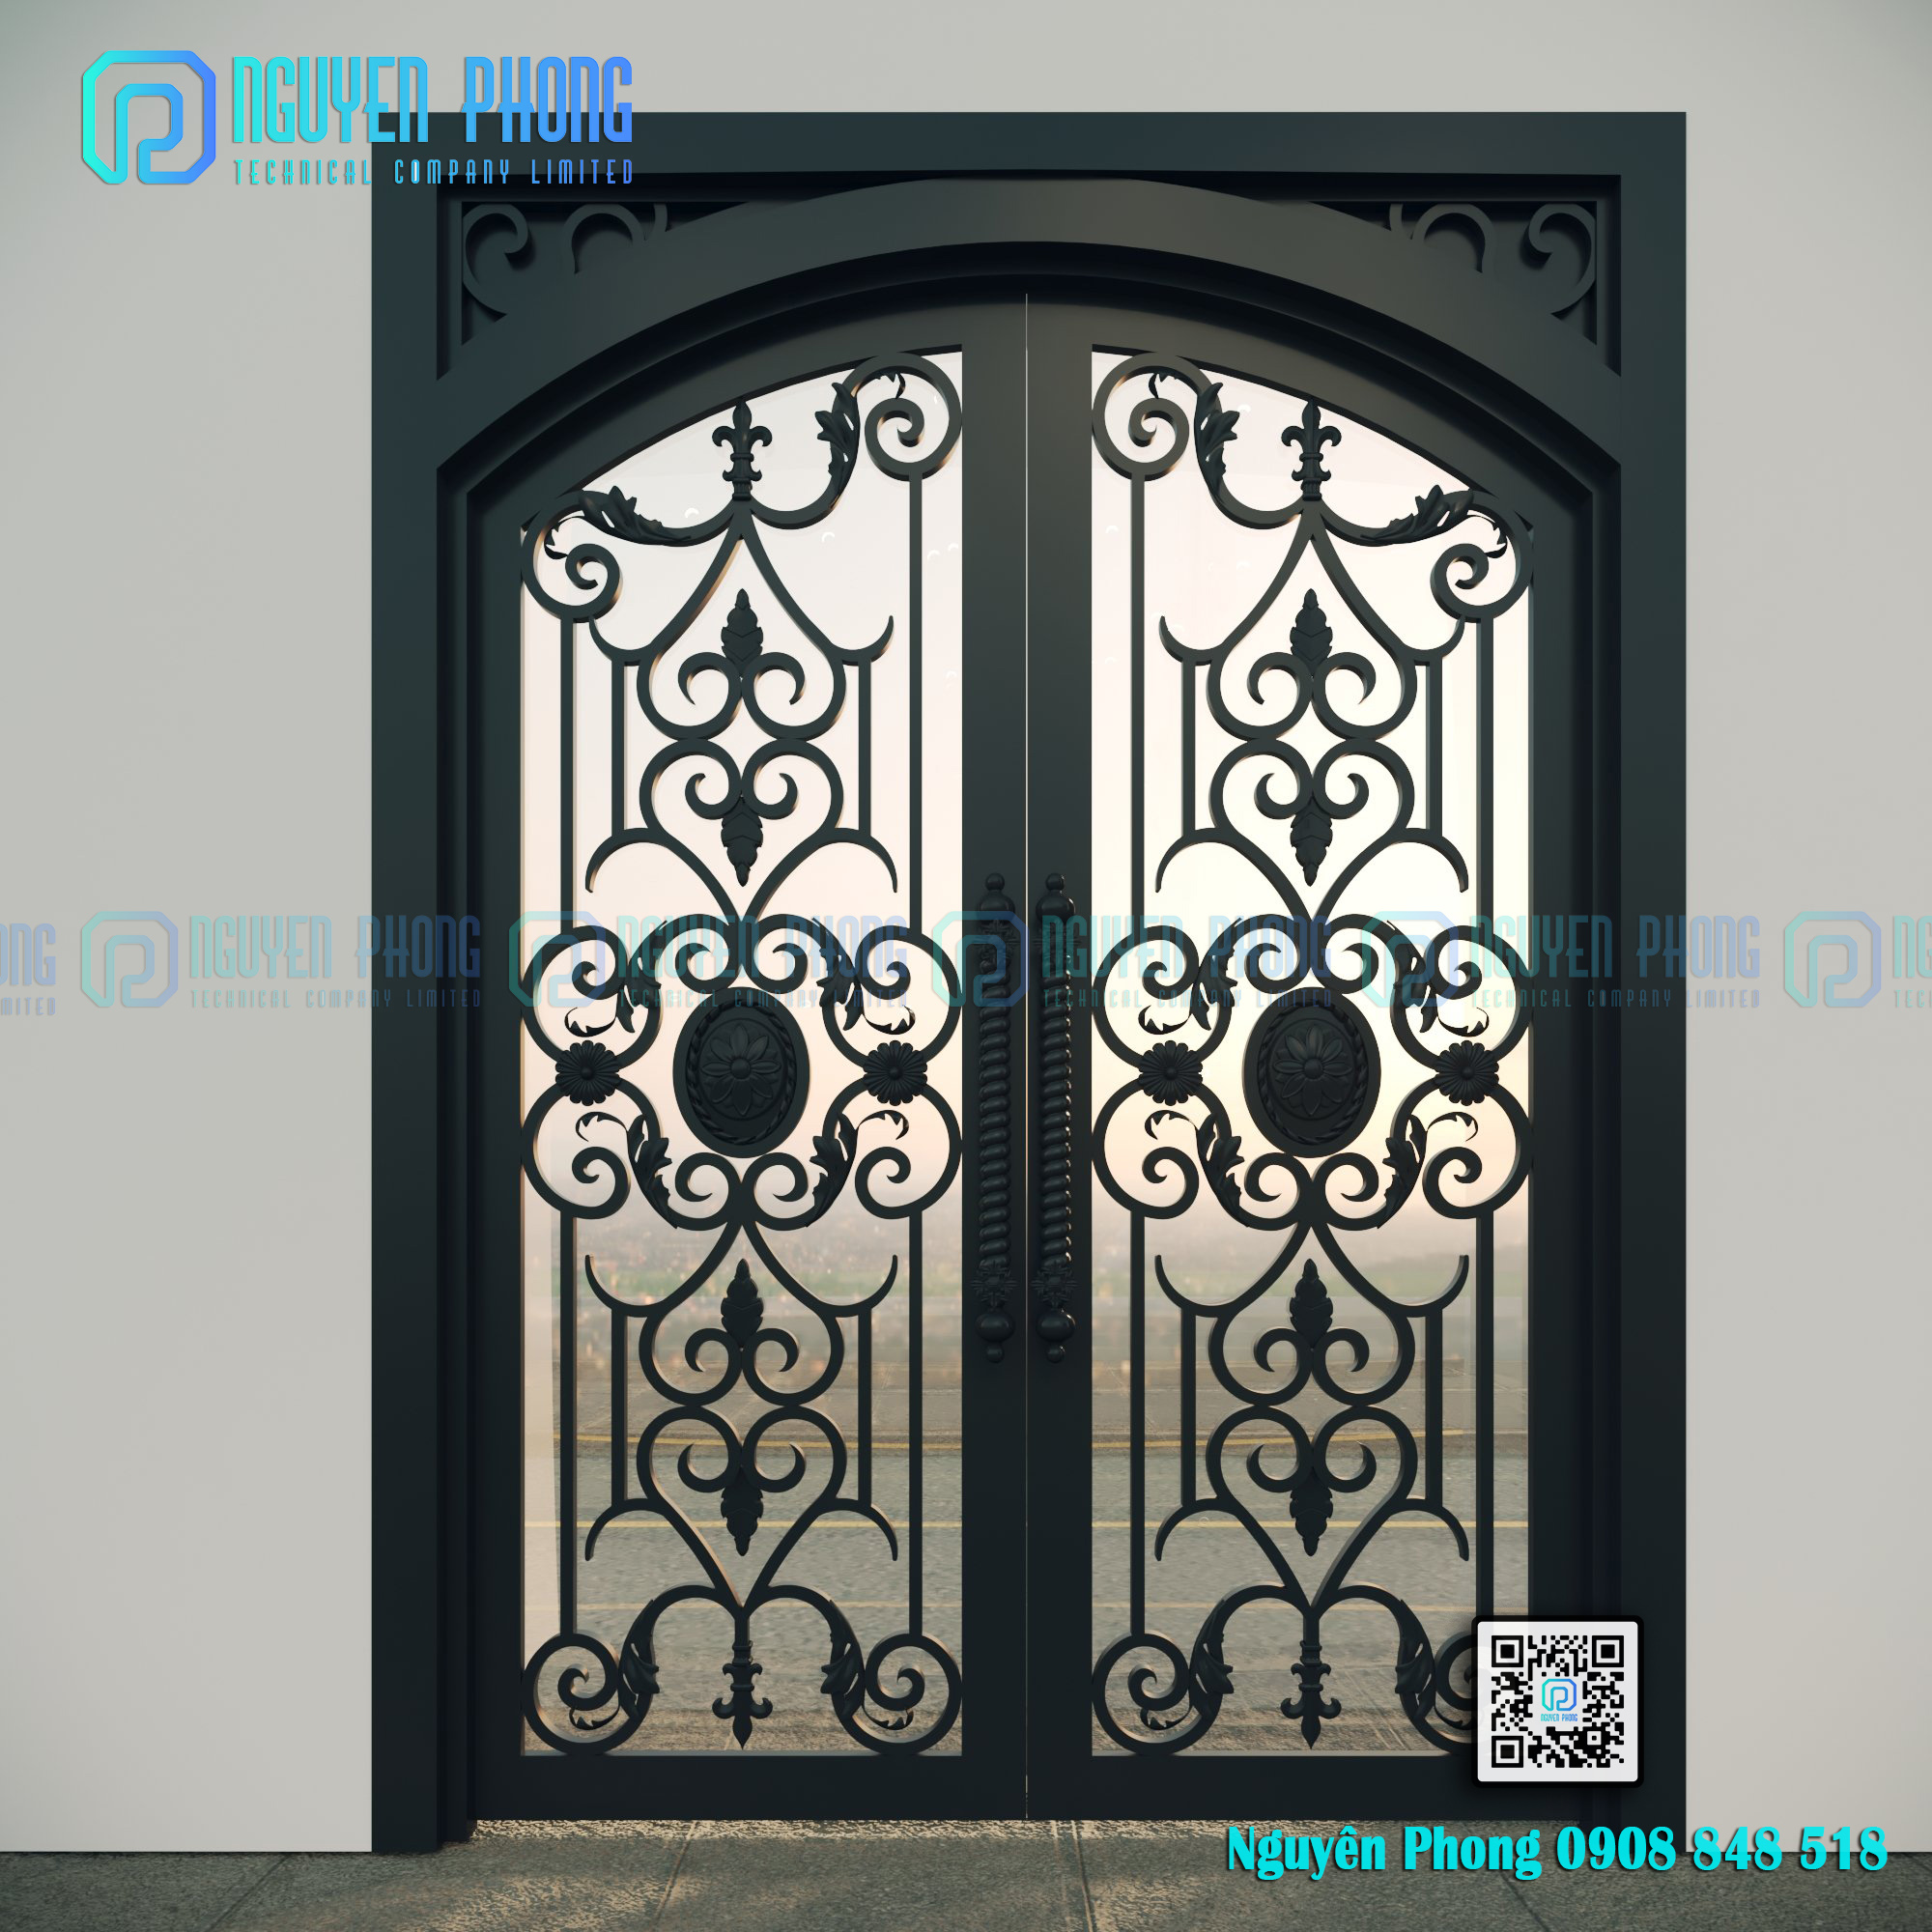 wrought-iron-door-wholesale-doors-iron-door-designs-1802.jpg